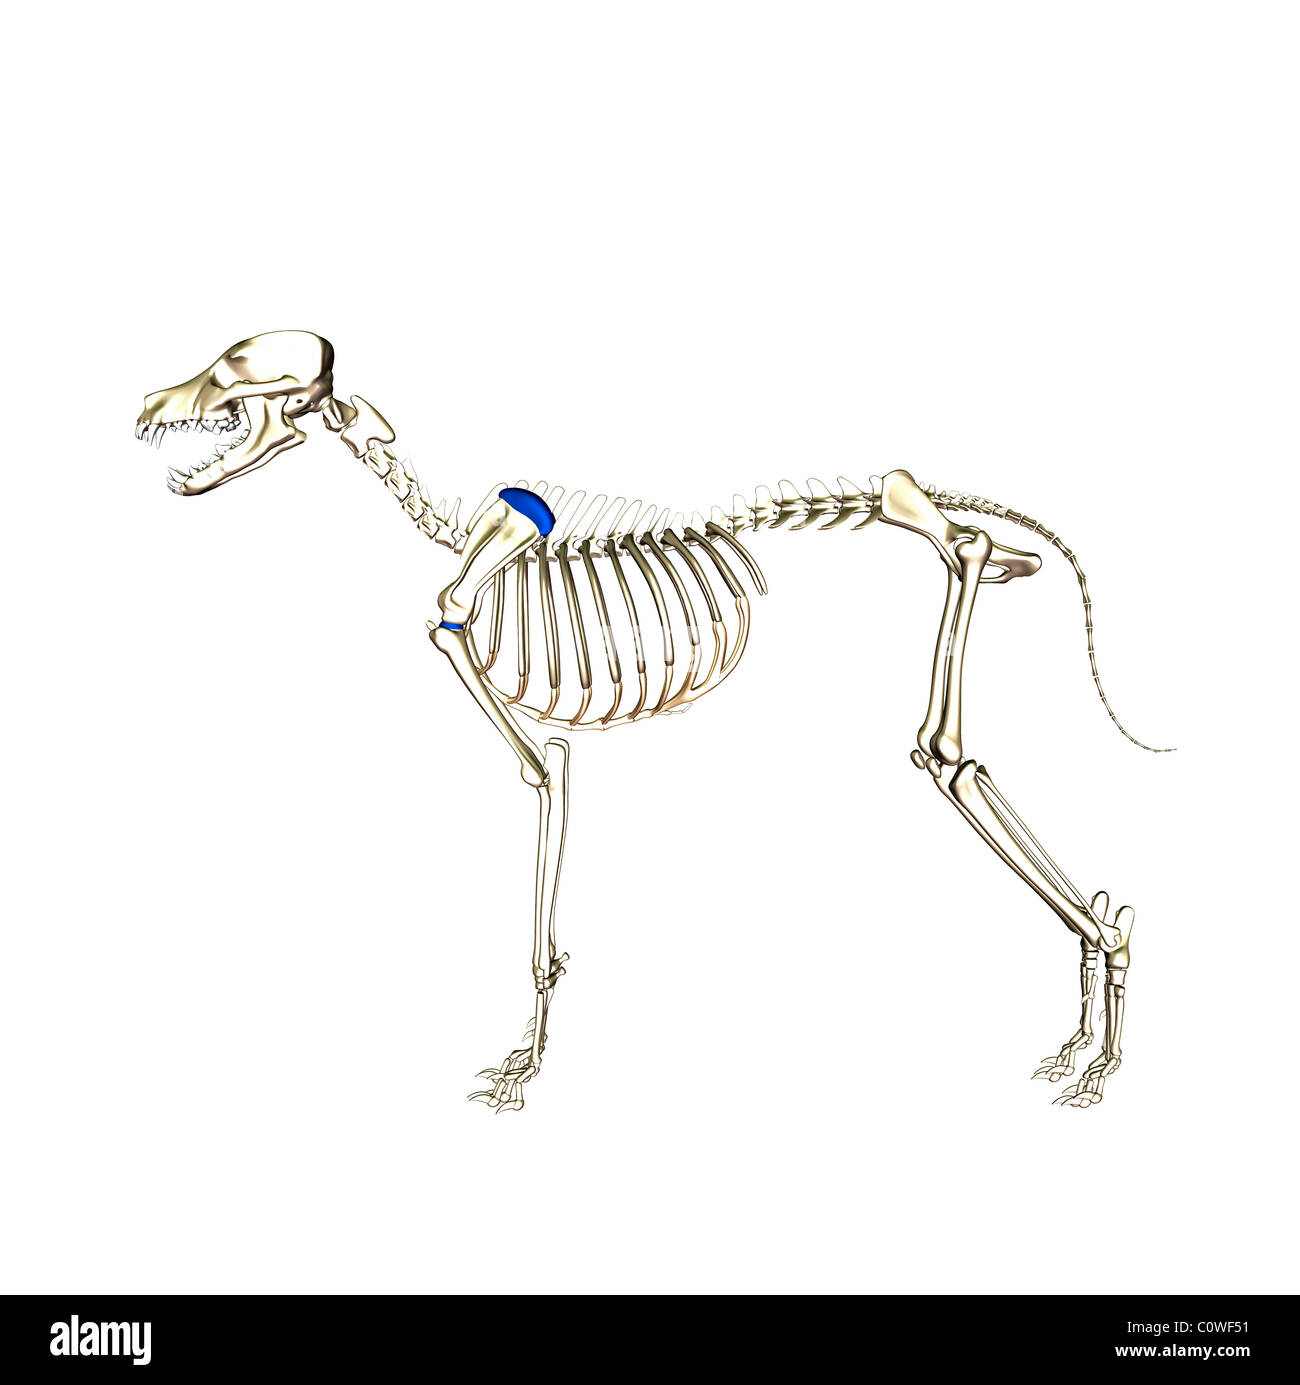 Anatomía del perro esqueleto Foto de stock